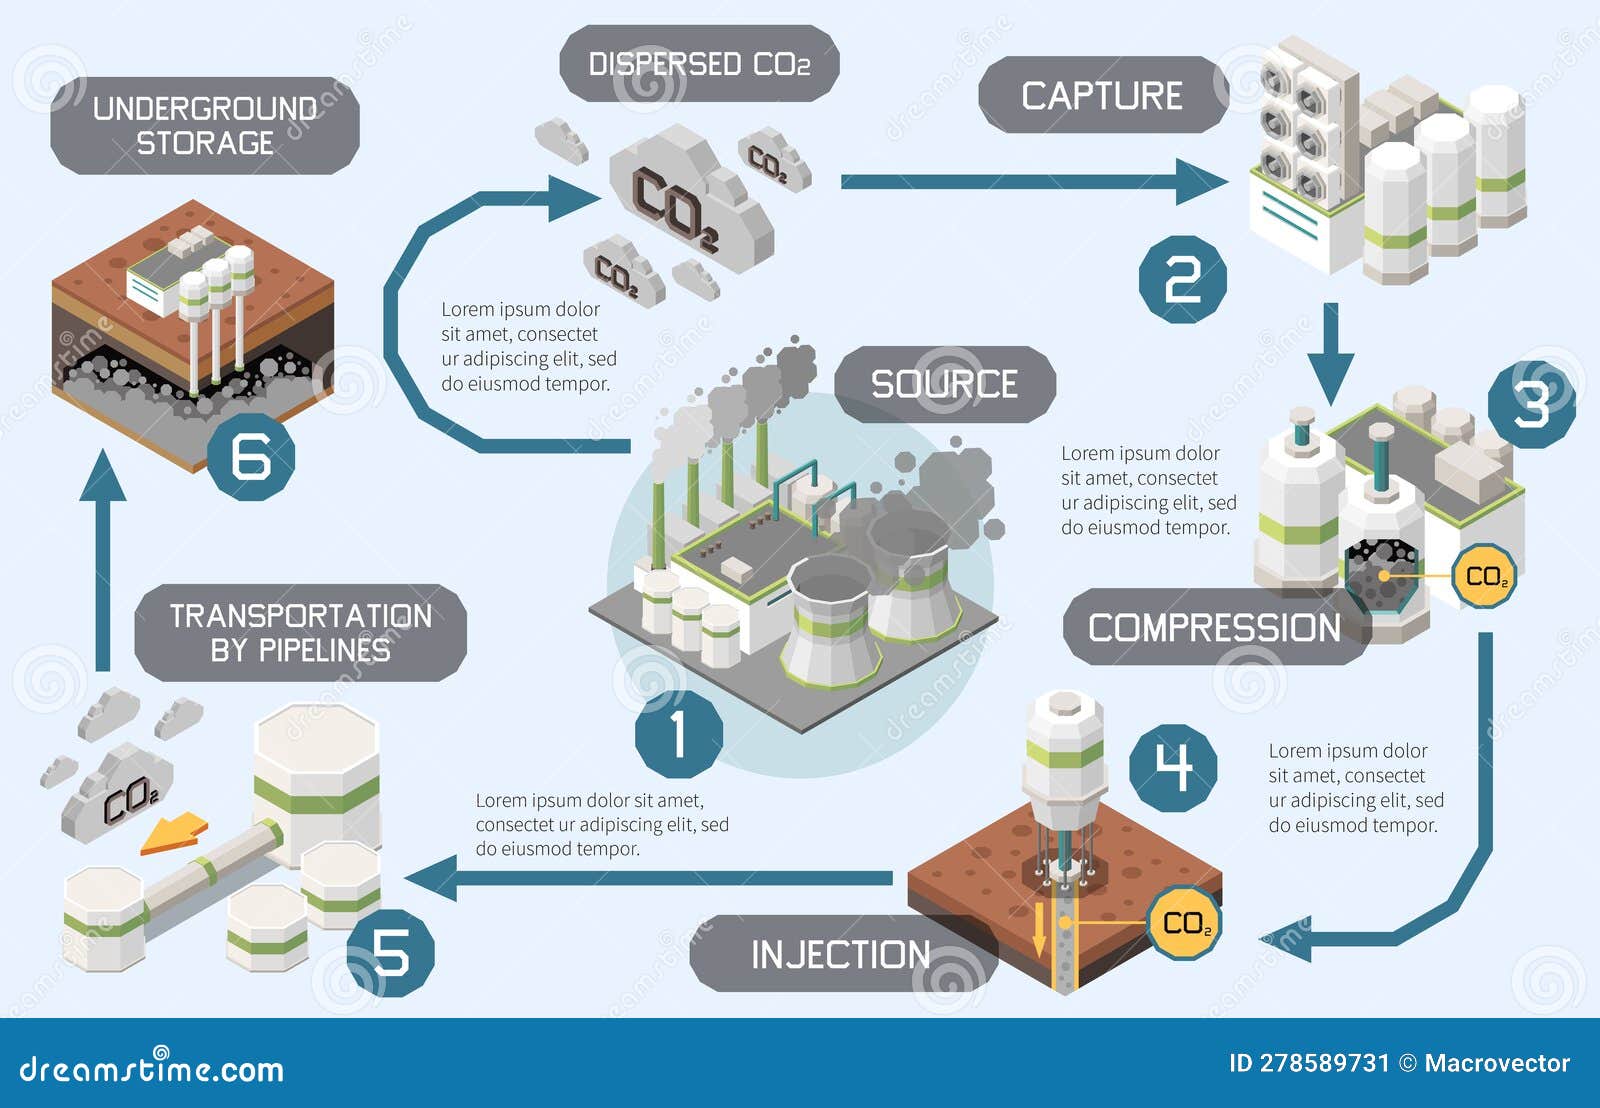 carbon capture diagram composition